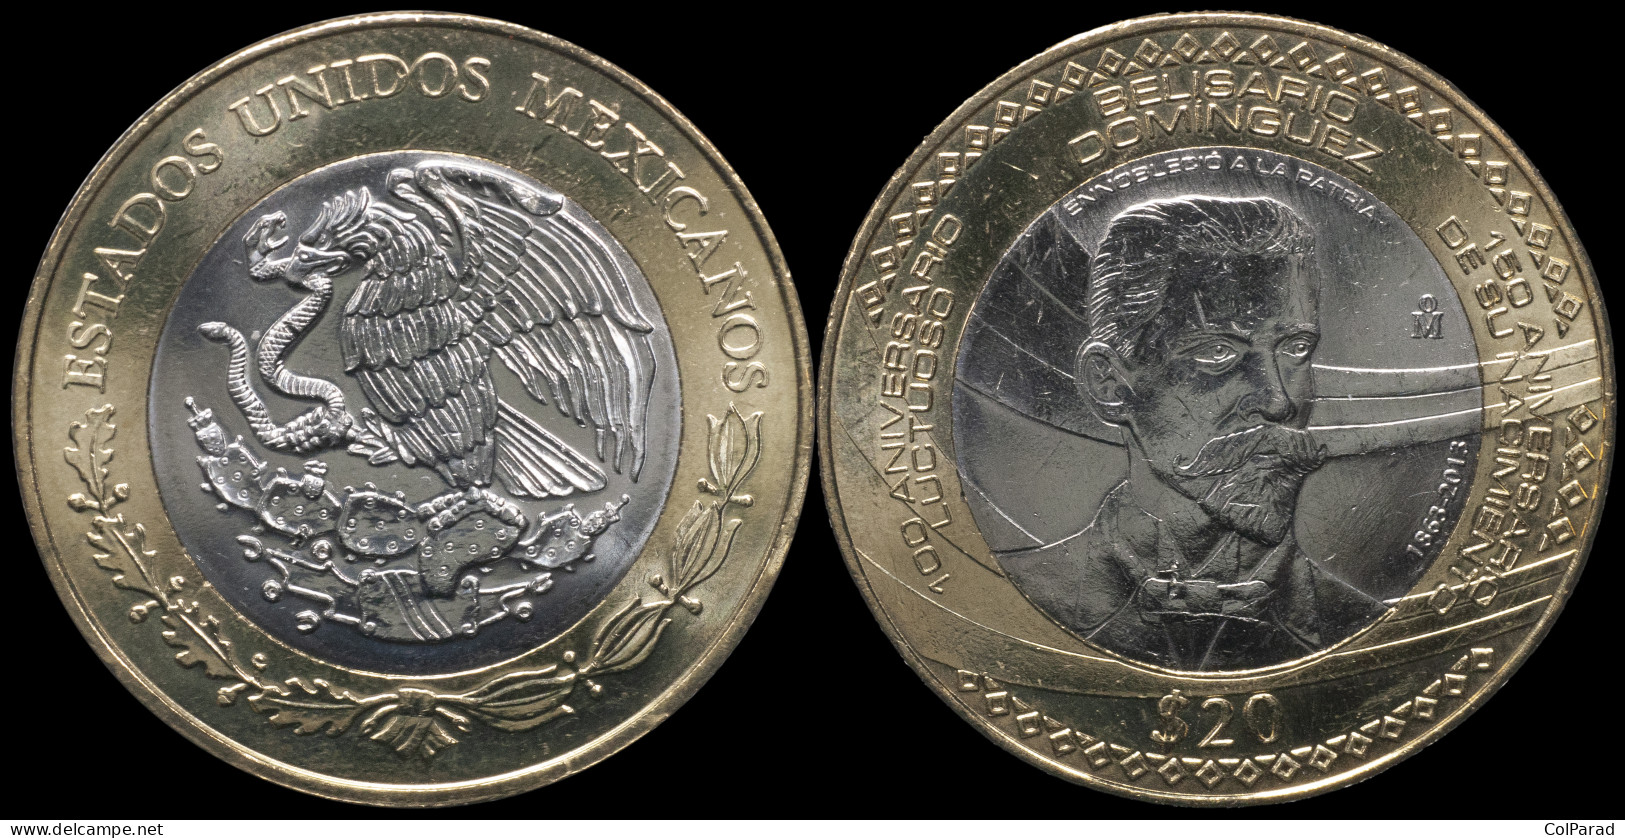 MEXICO COIN 20 PESOS - KM#970 Bi-Metallic Unc - 2013 - Belisario Domínguez - México